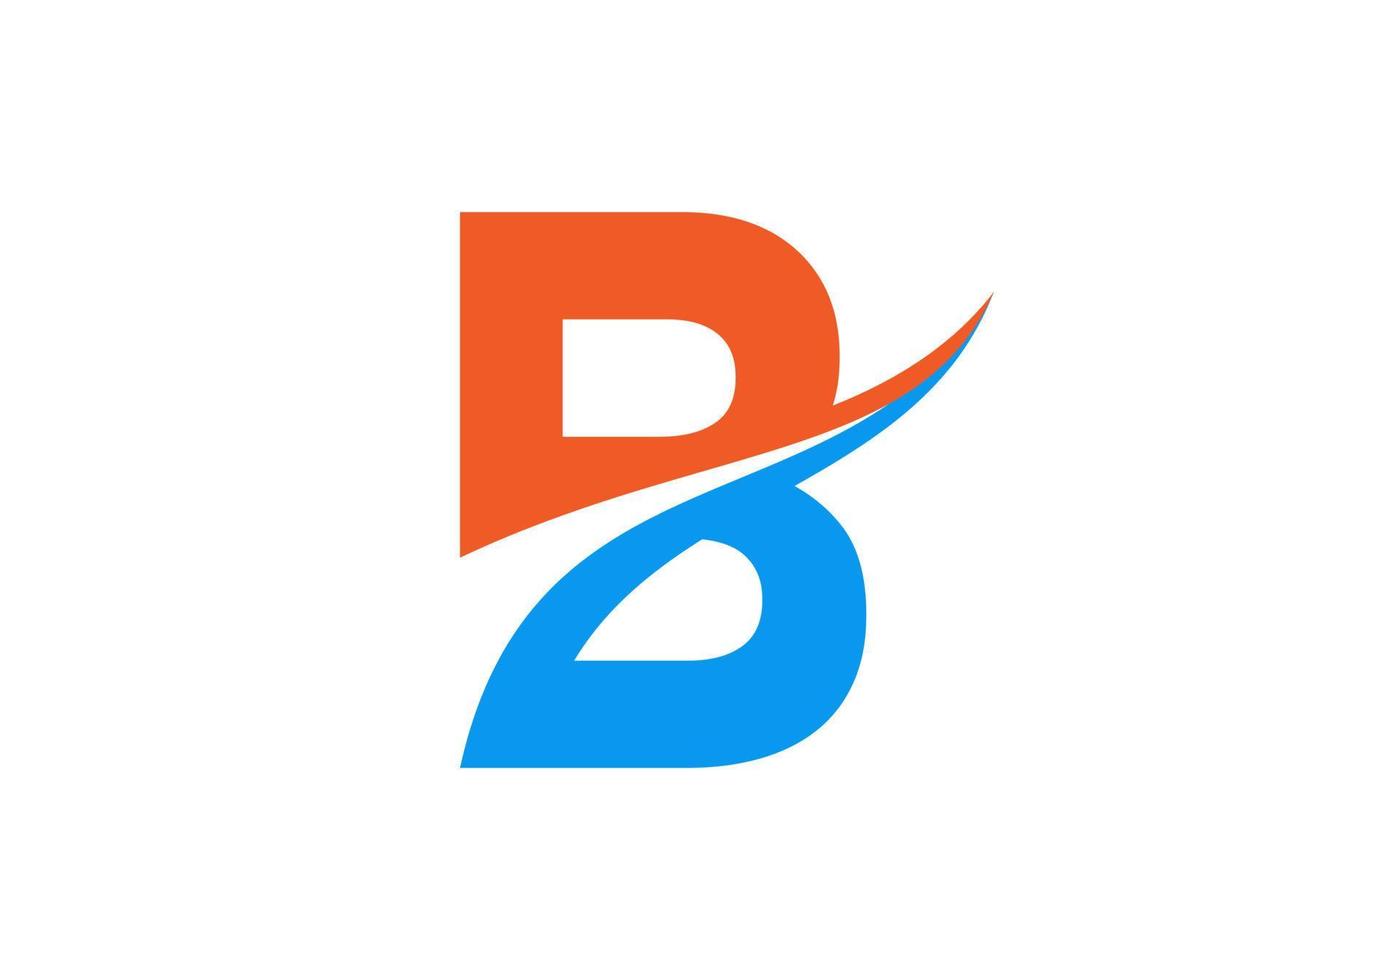 eerste brief b logo modern bedrijf typografie vector sjabloon